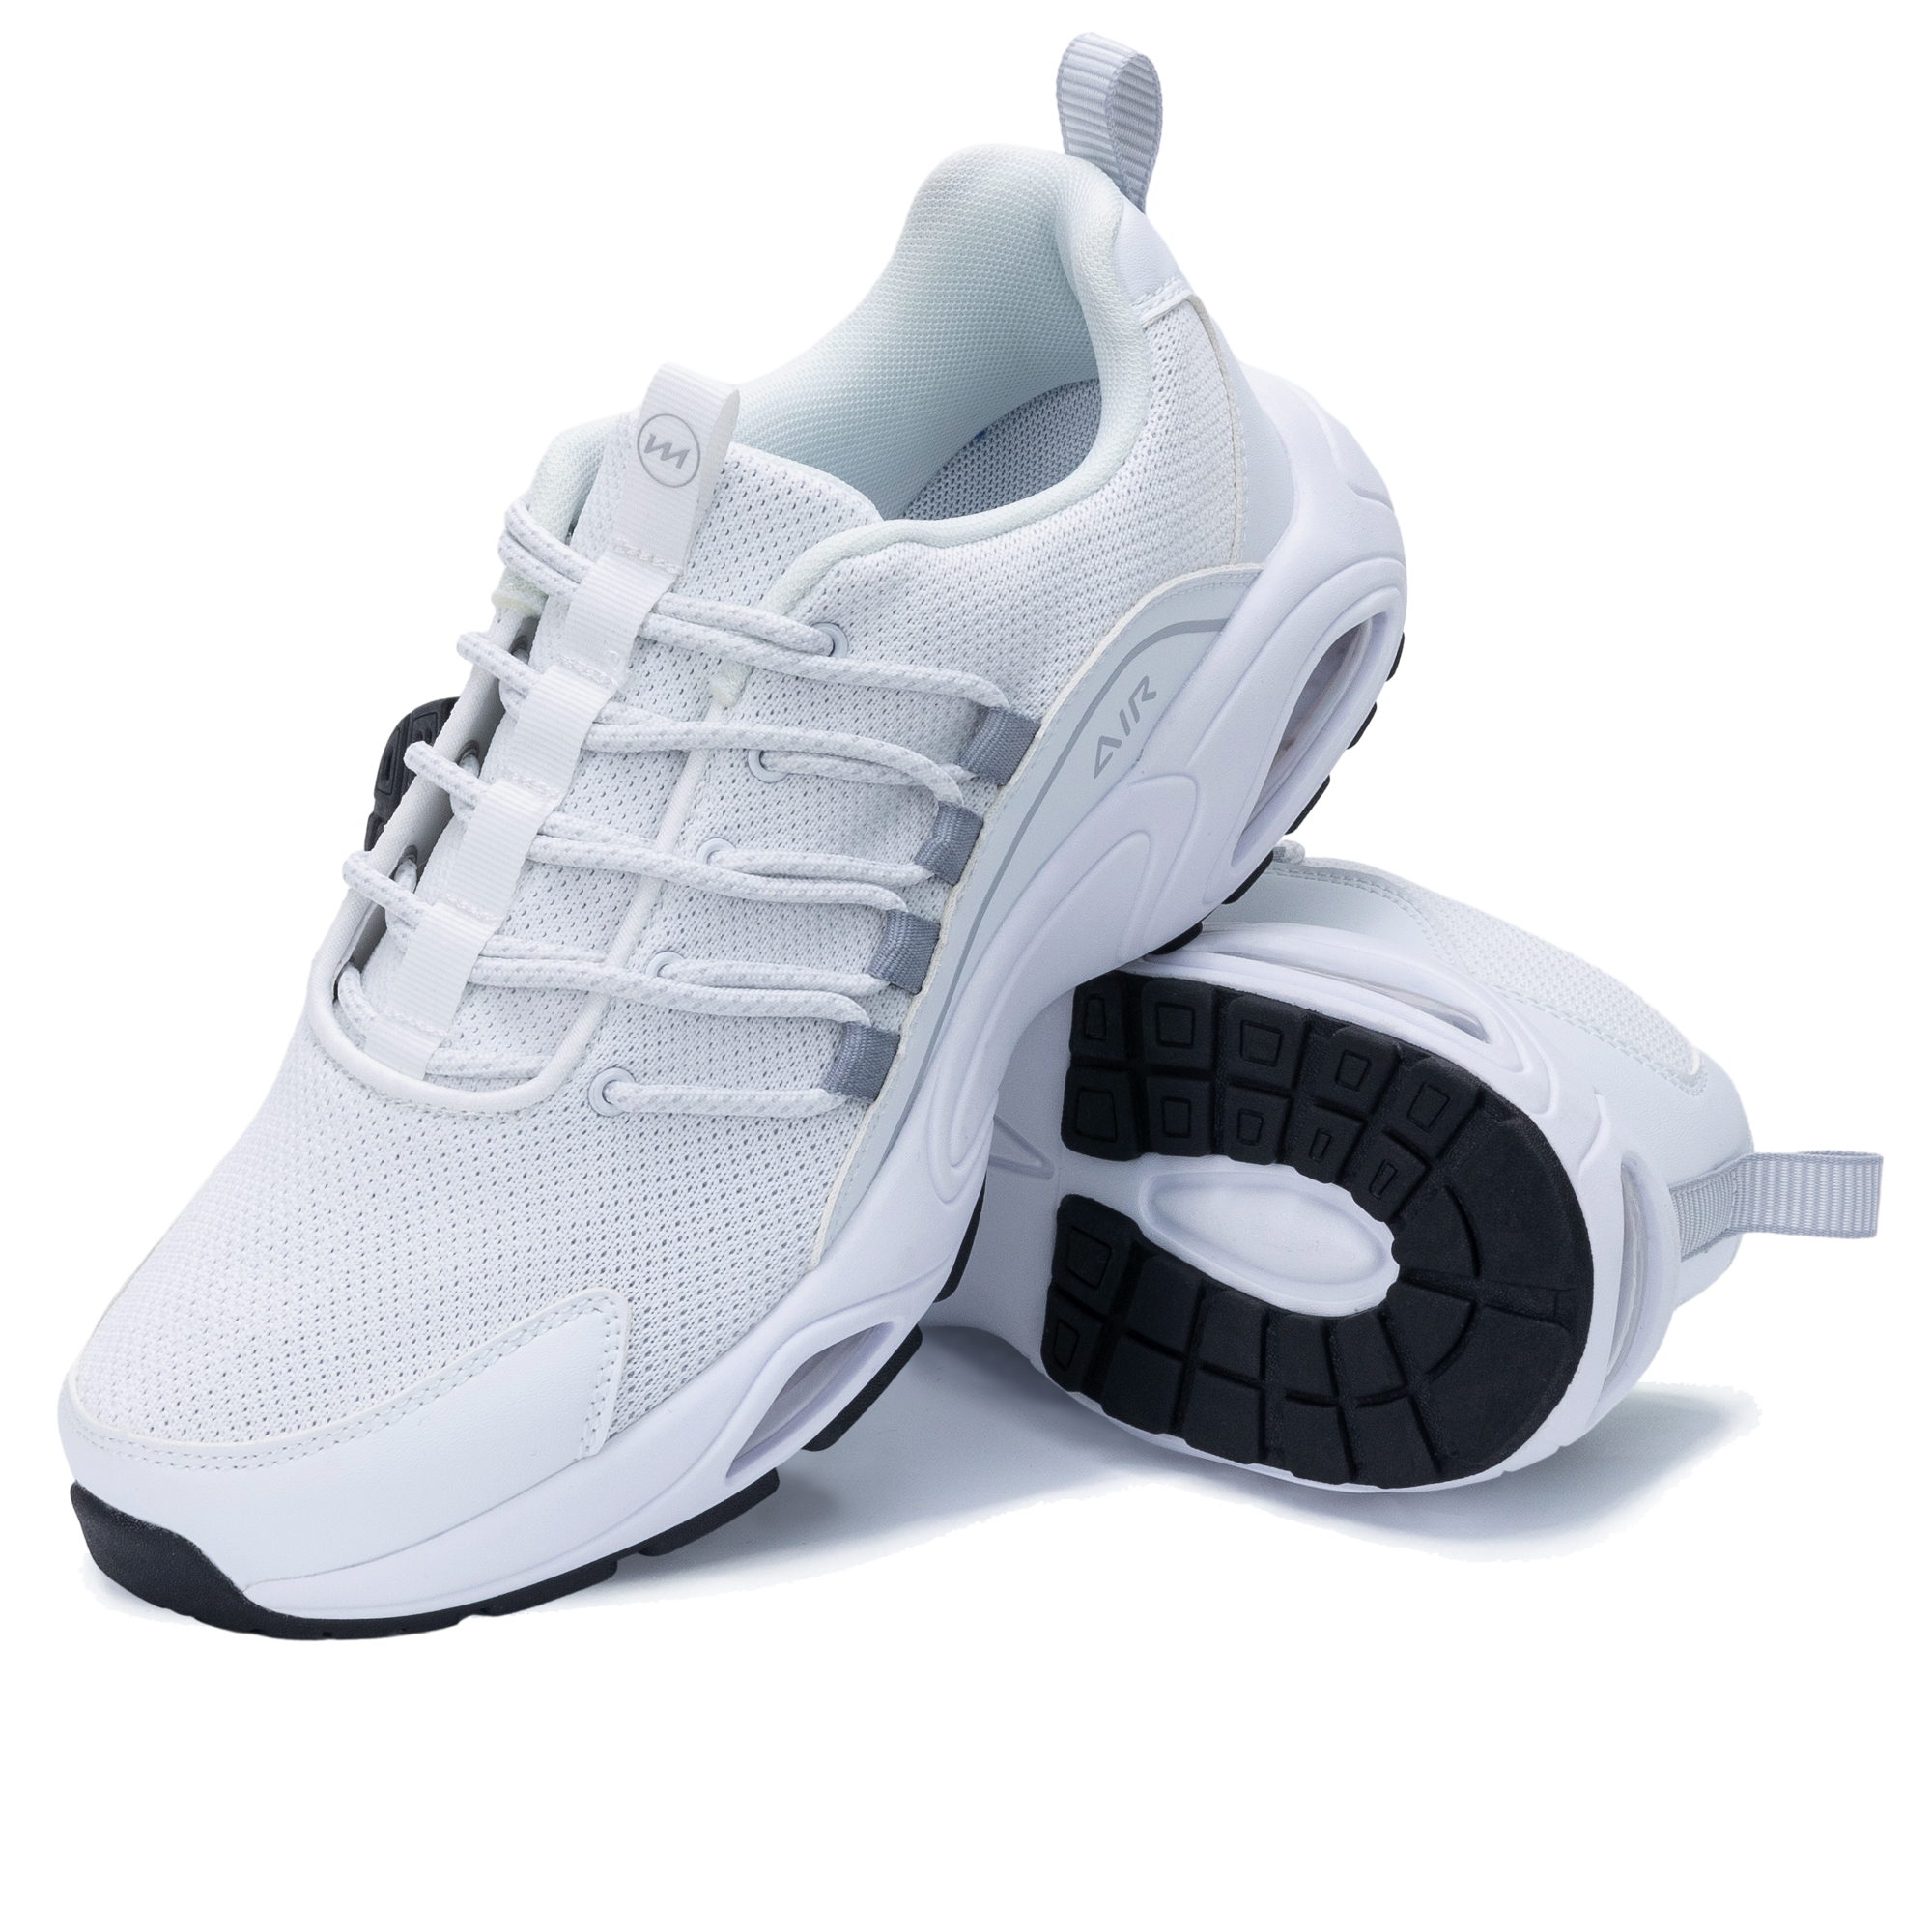 Heren Casual schoenen Ademend Runnning Trainers Sneakers Lichtgewicht Athletic Tennis Sport Shoe voor Gym Walking Jogging Fitness Training